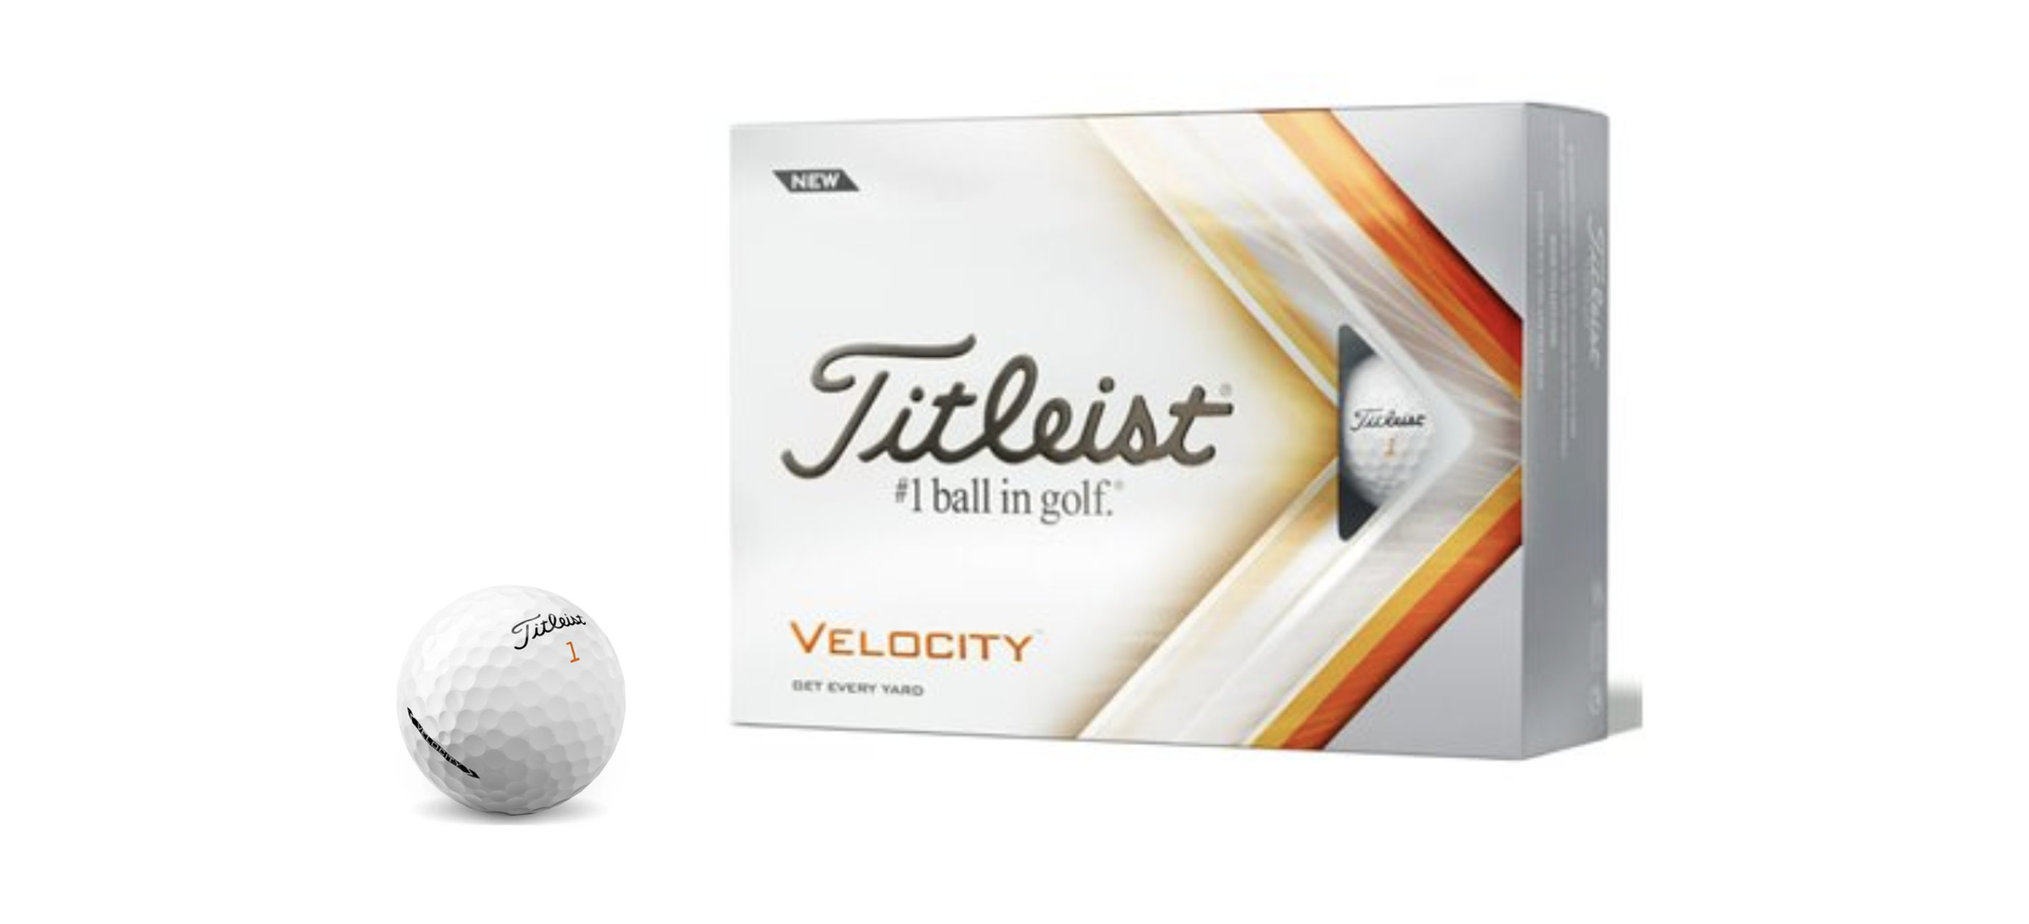 Titleist Velocity Golf Ball Review header